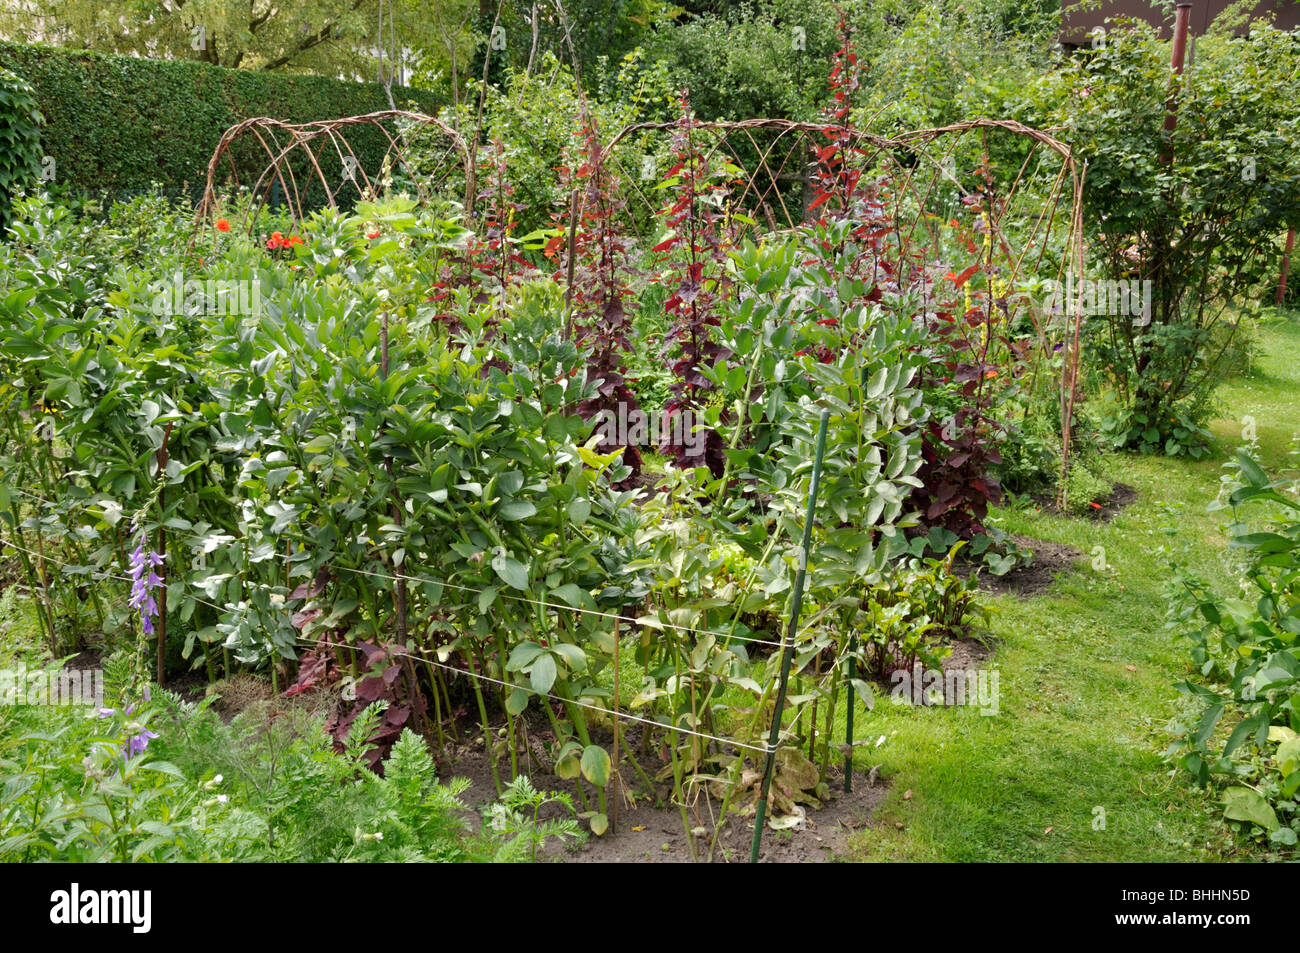 Broad bean (Vicia faba) and red garden orache (Atriplex hortensis var. rubra) in a vegetable garden. Design: Susanna Komischke Stock Photo